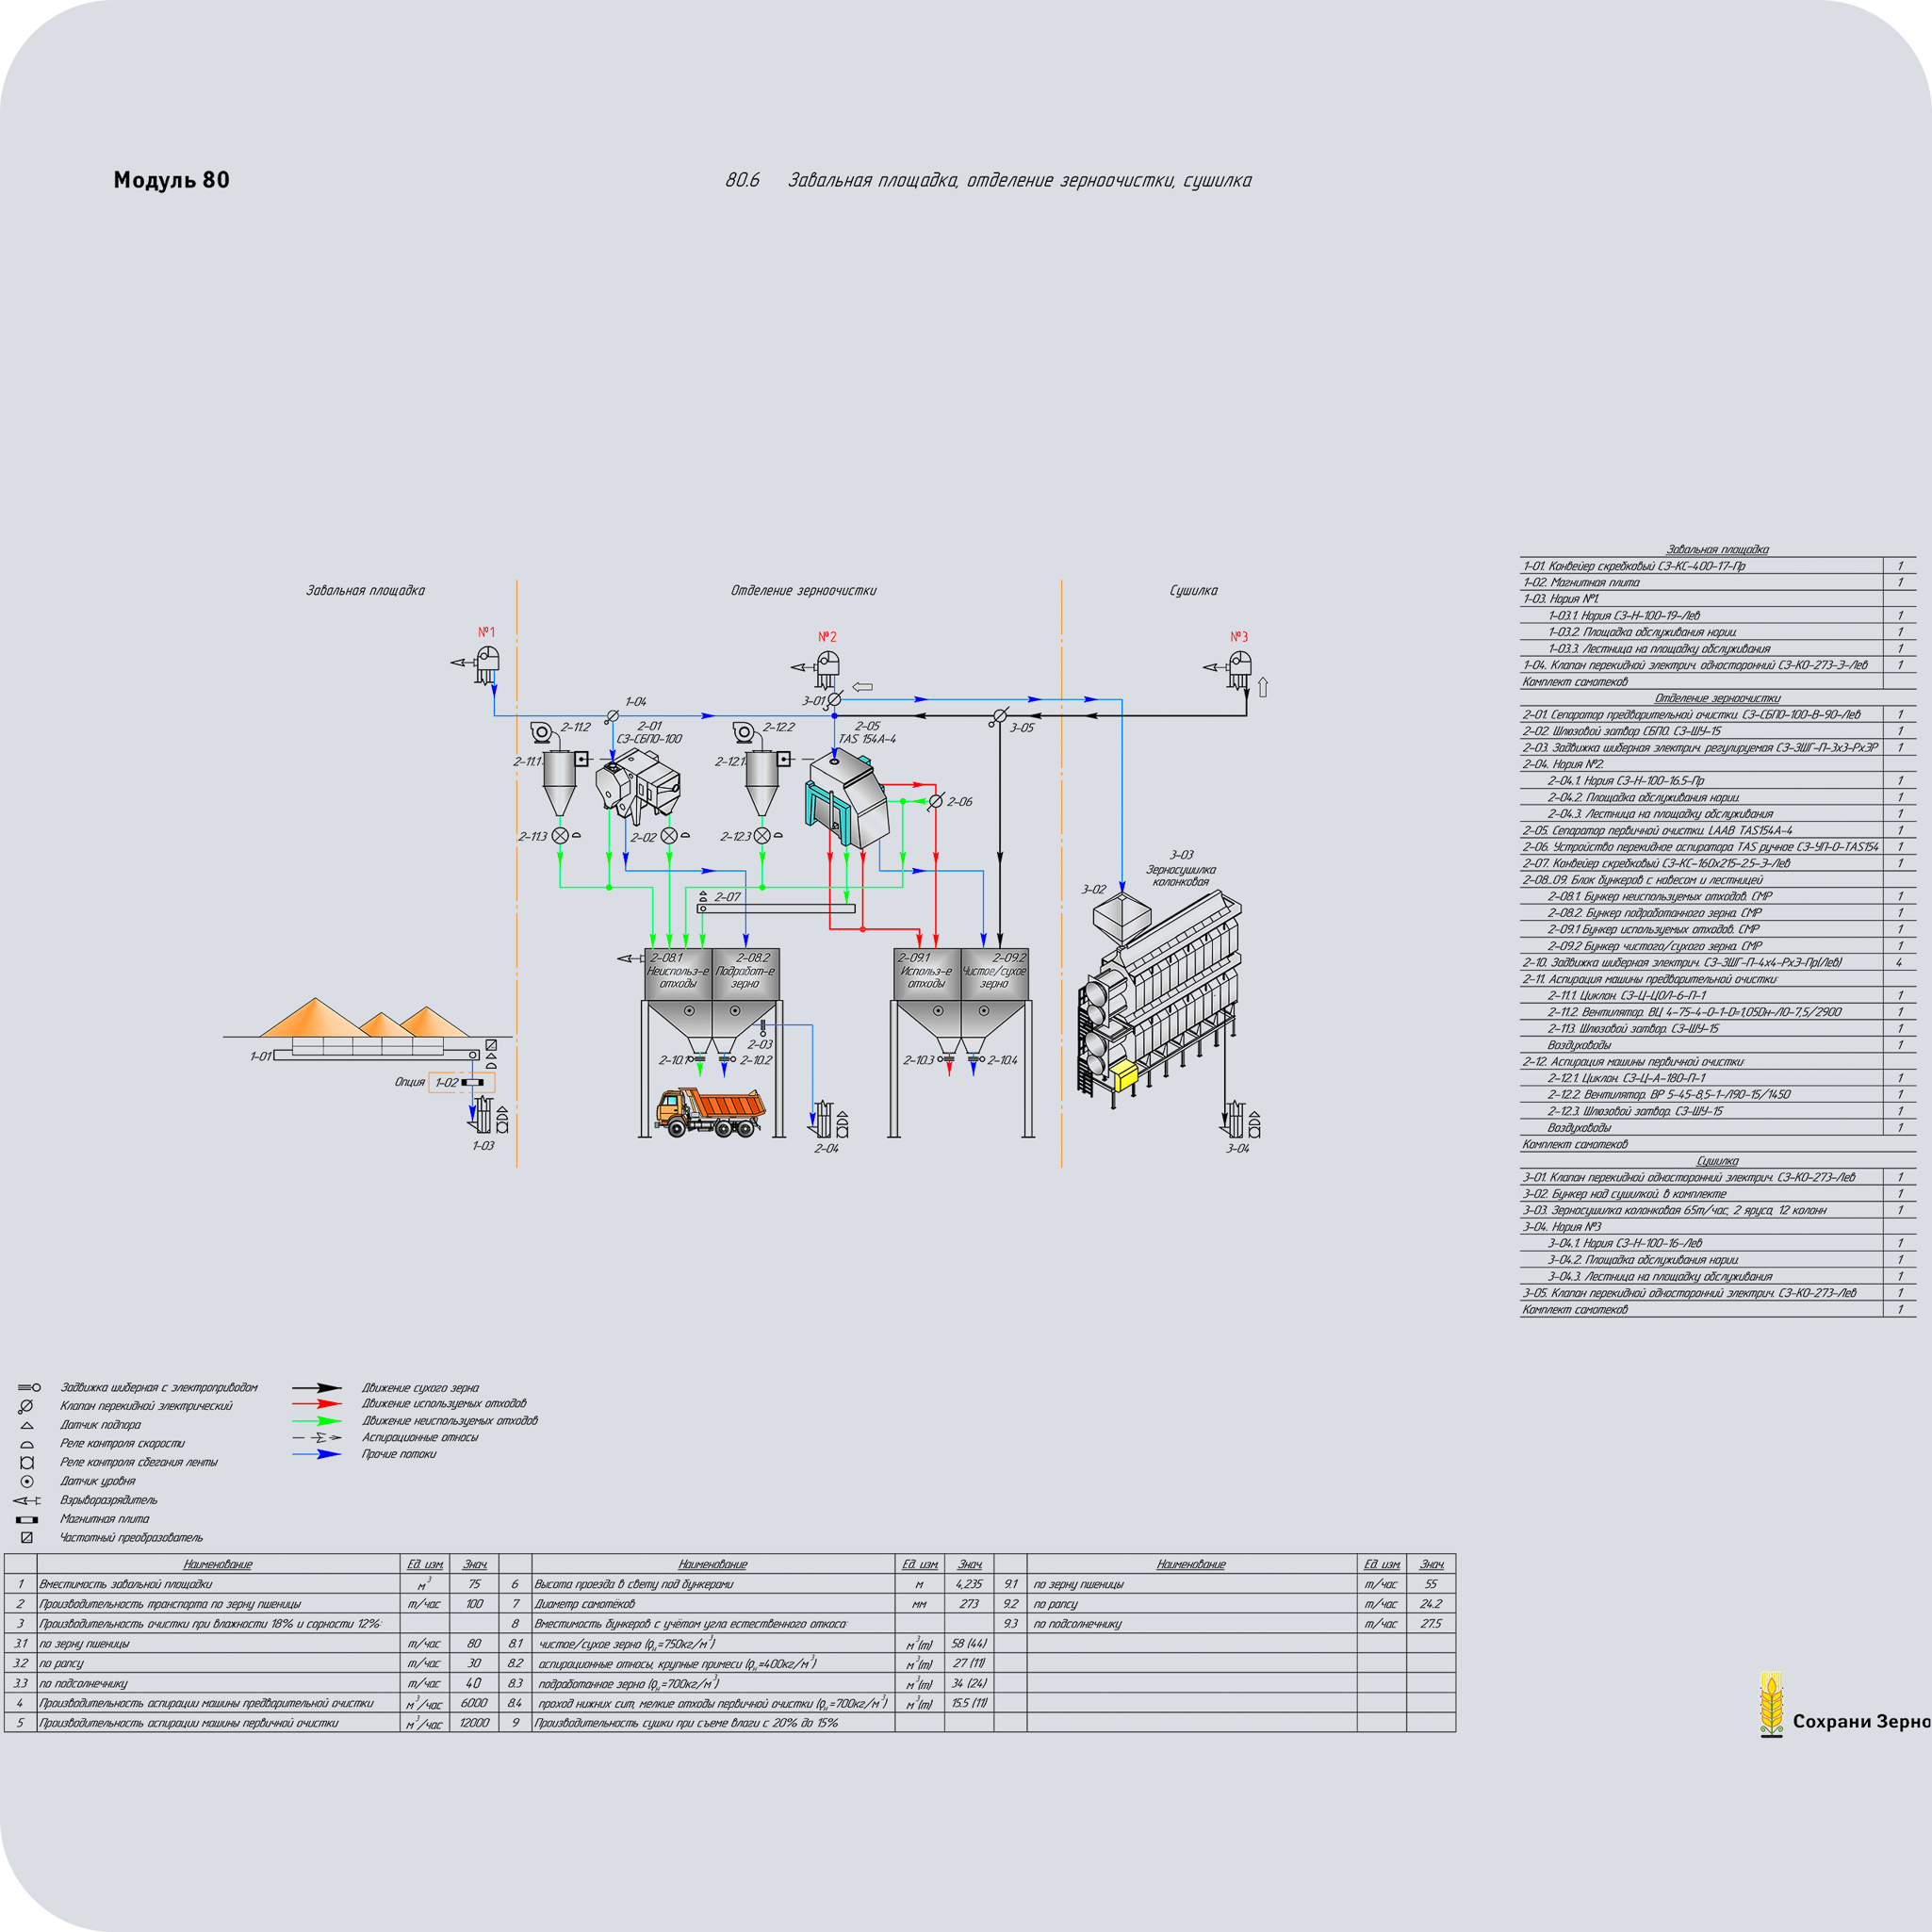 Модуль 80.6 Завальная площадка, отделение зерноочистки, сушилка (технологическая схема)